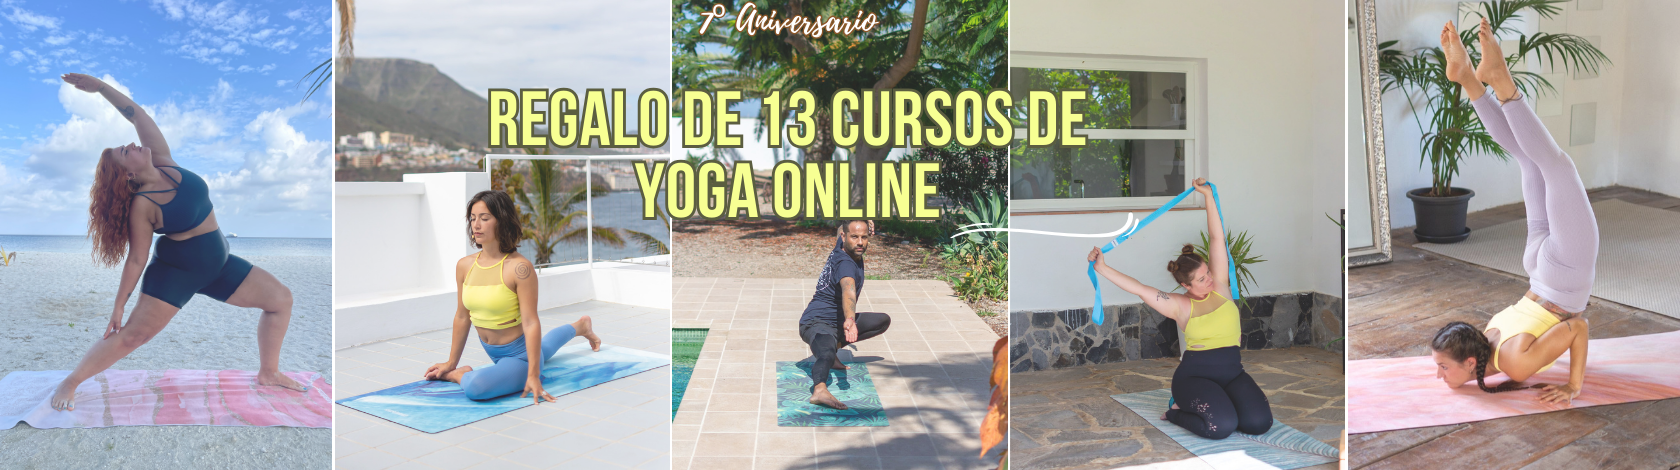 regalo cursos de yoga online